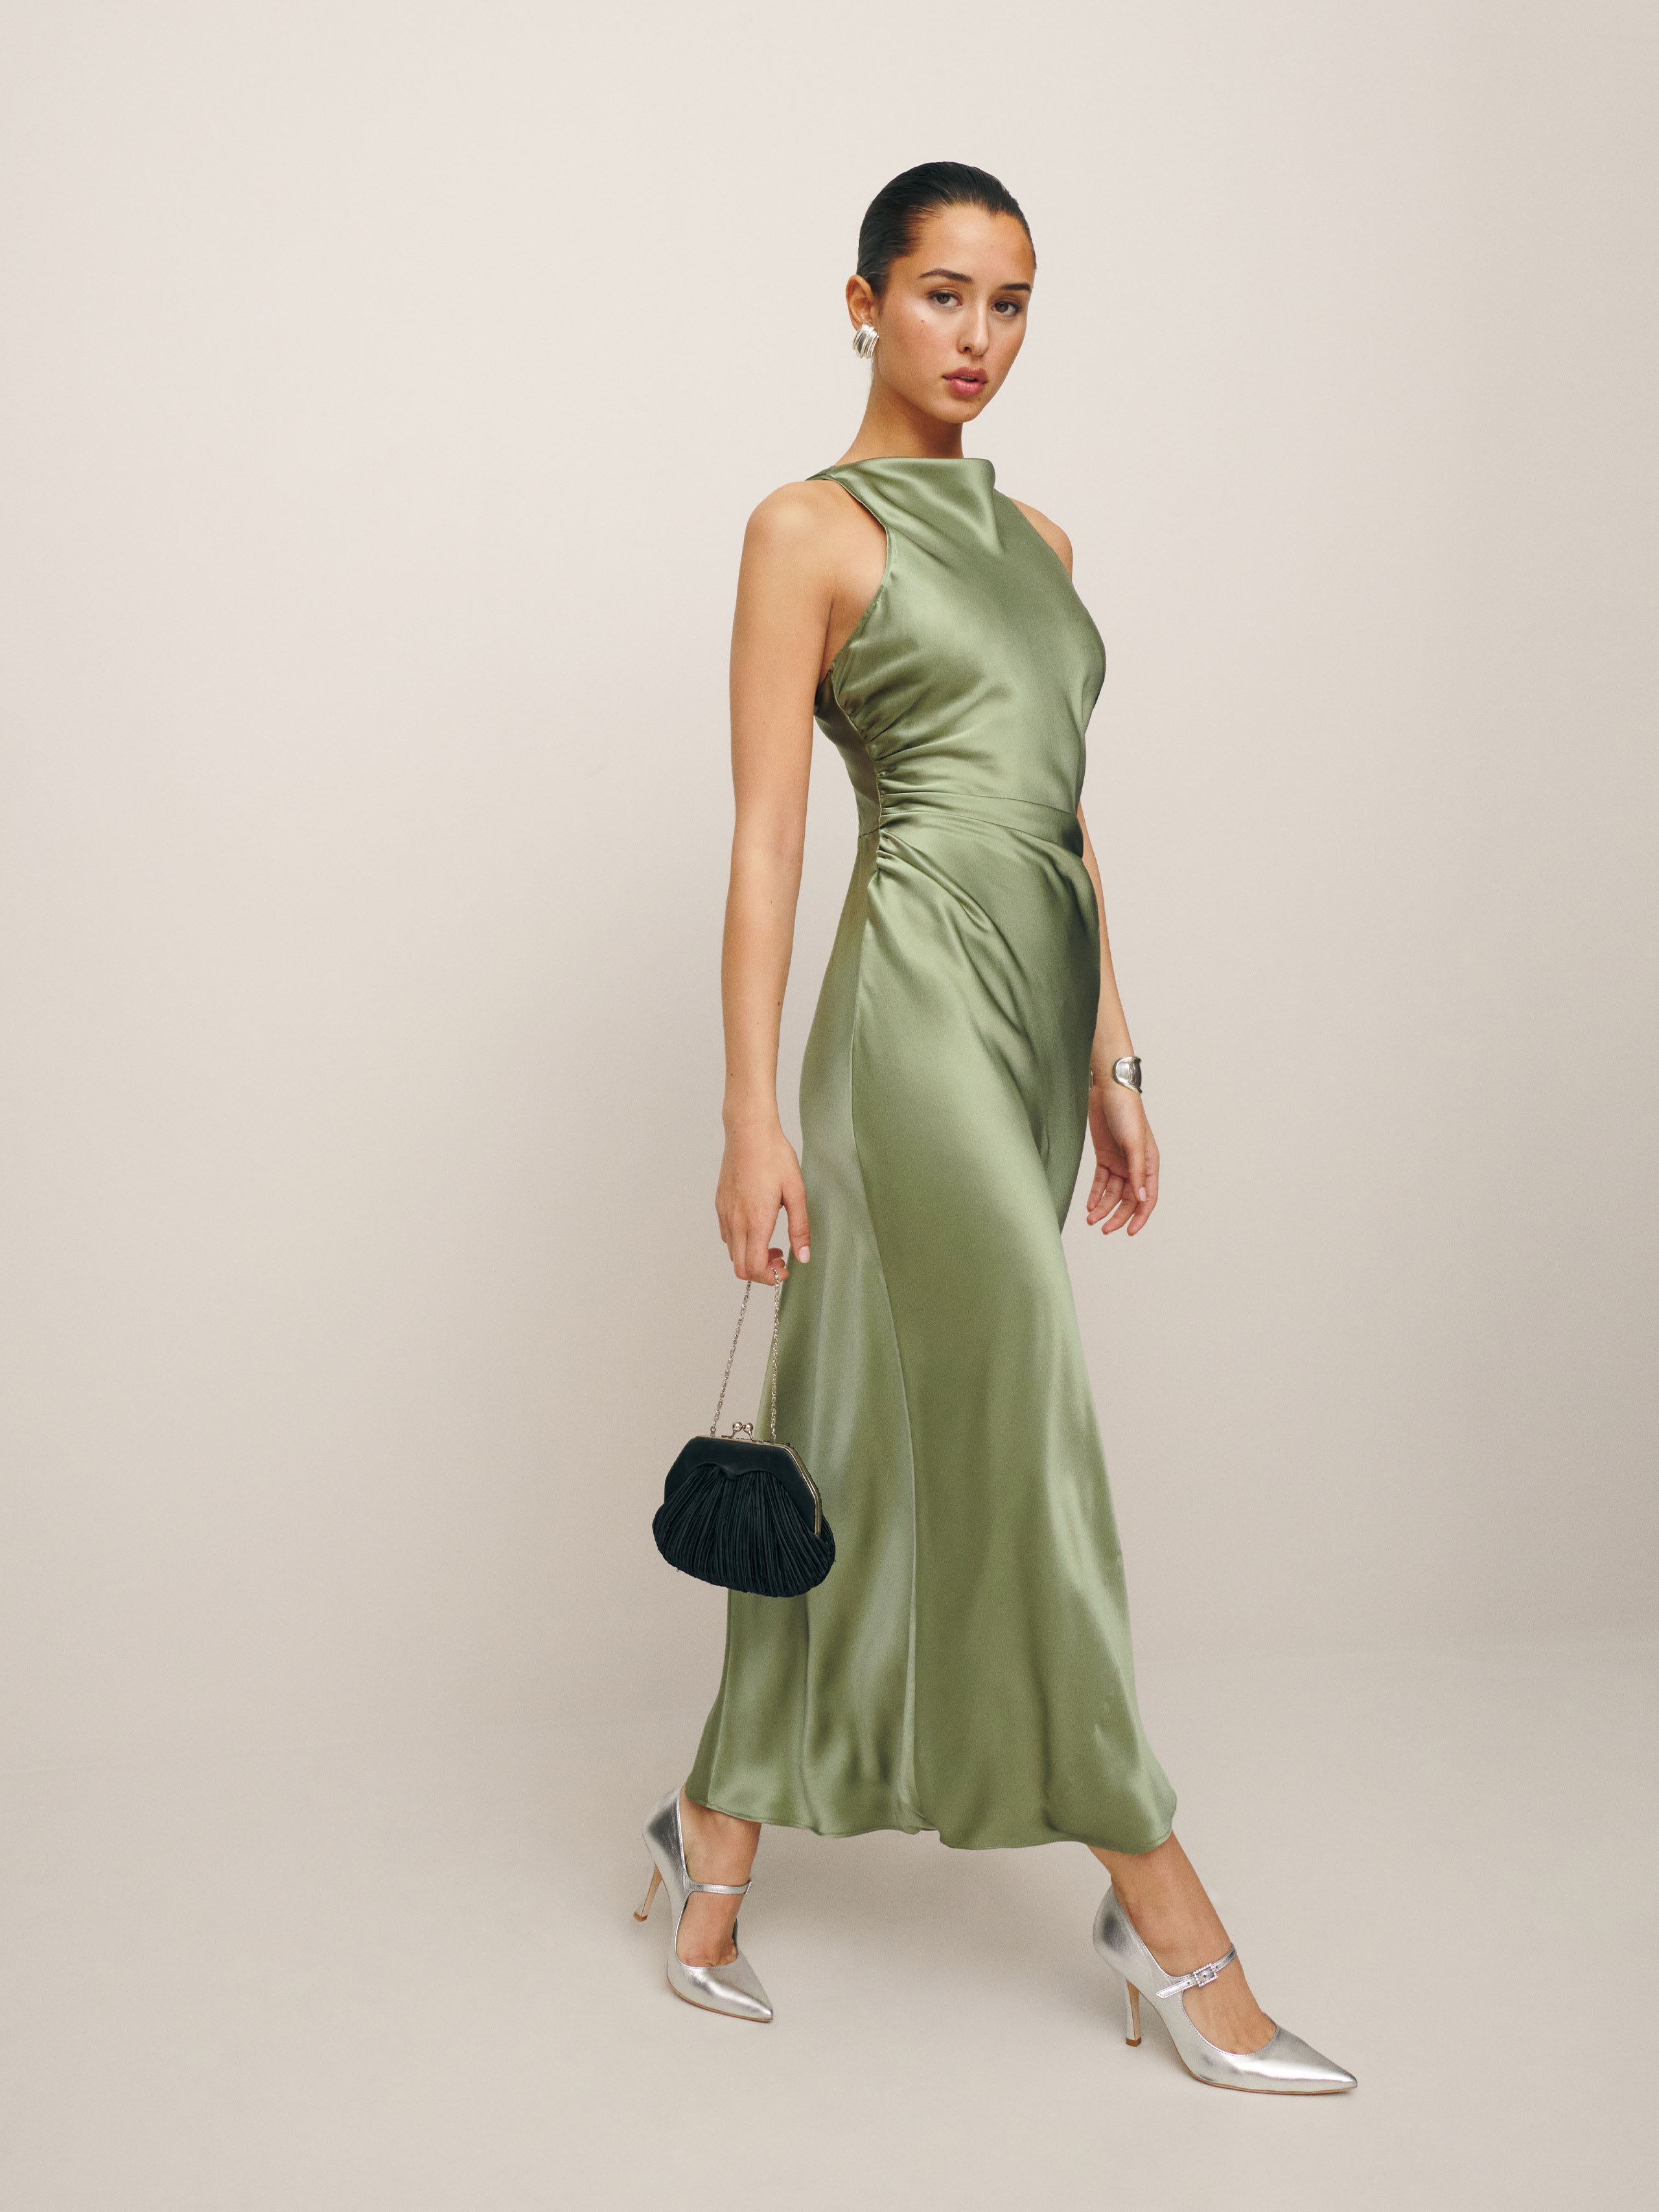 Casette Silk Dress, thumbnail image 2